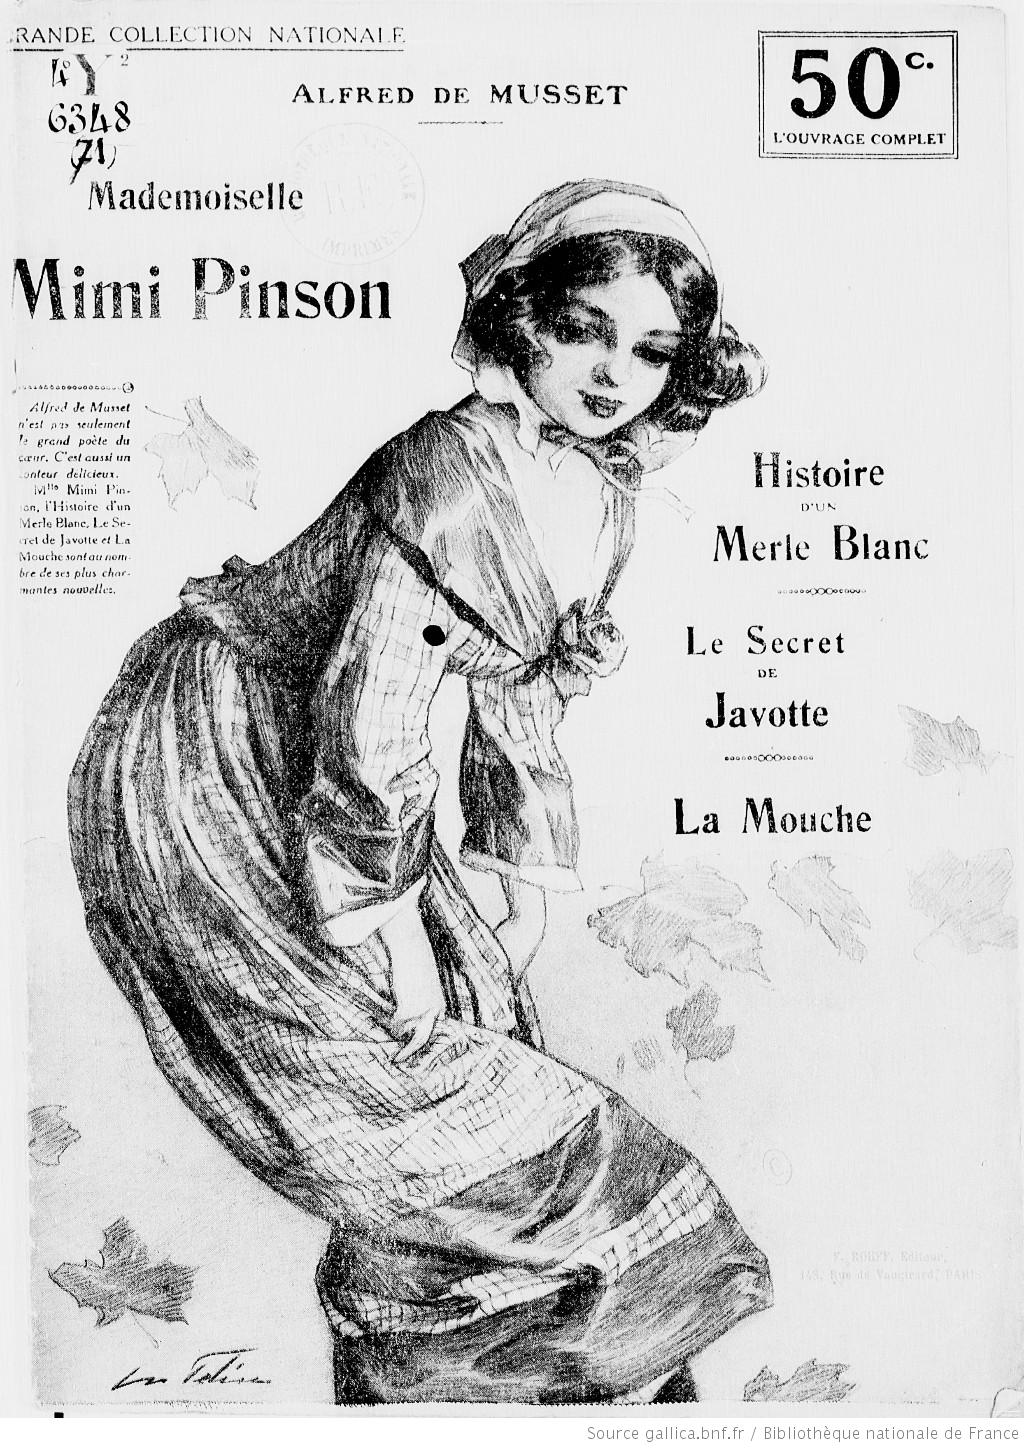 Mimi Pinson la grisette d'Alfred de Musset